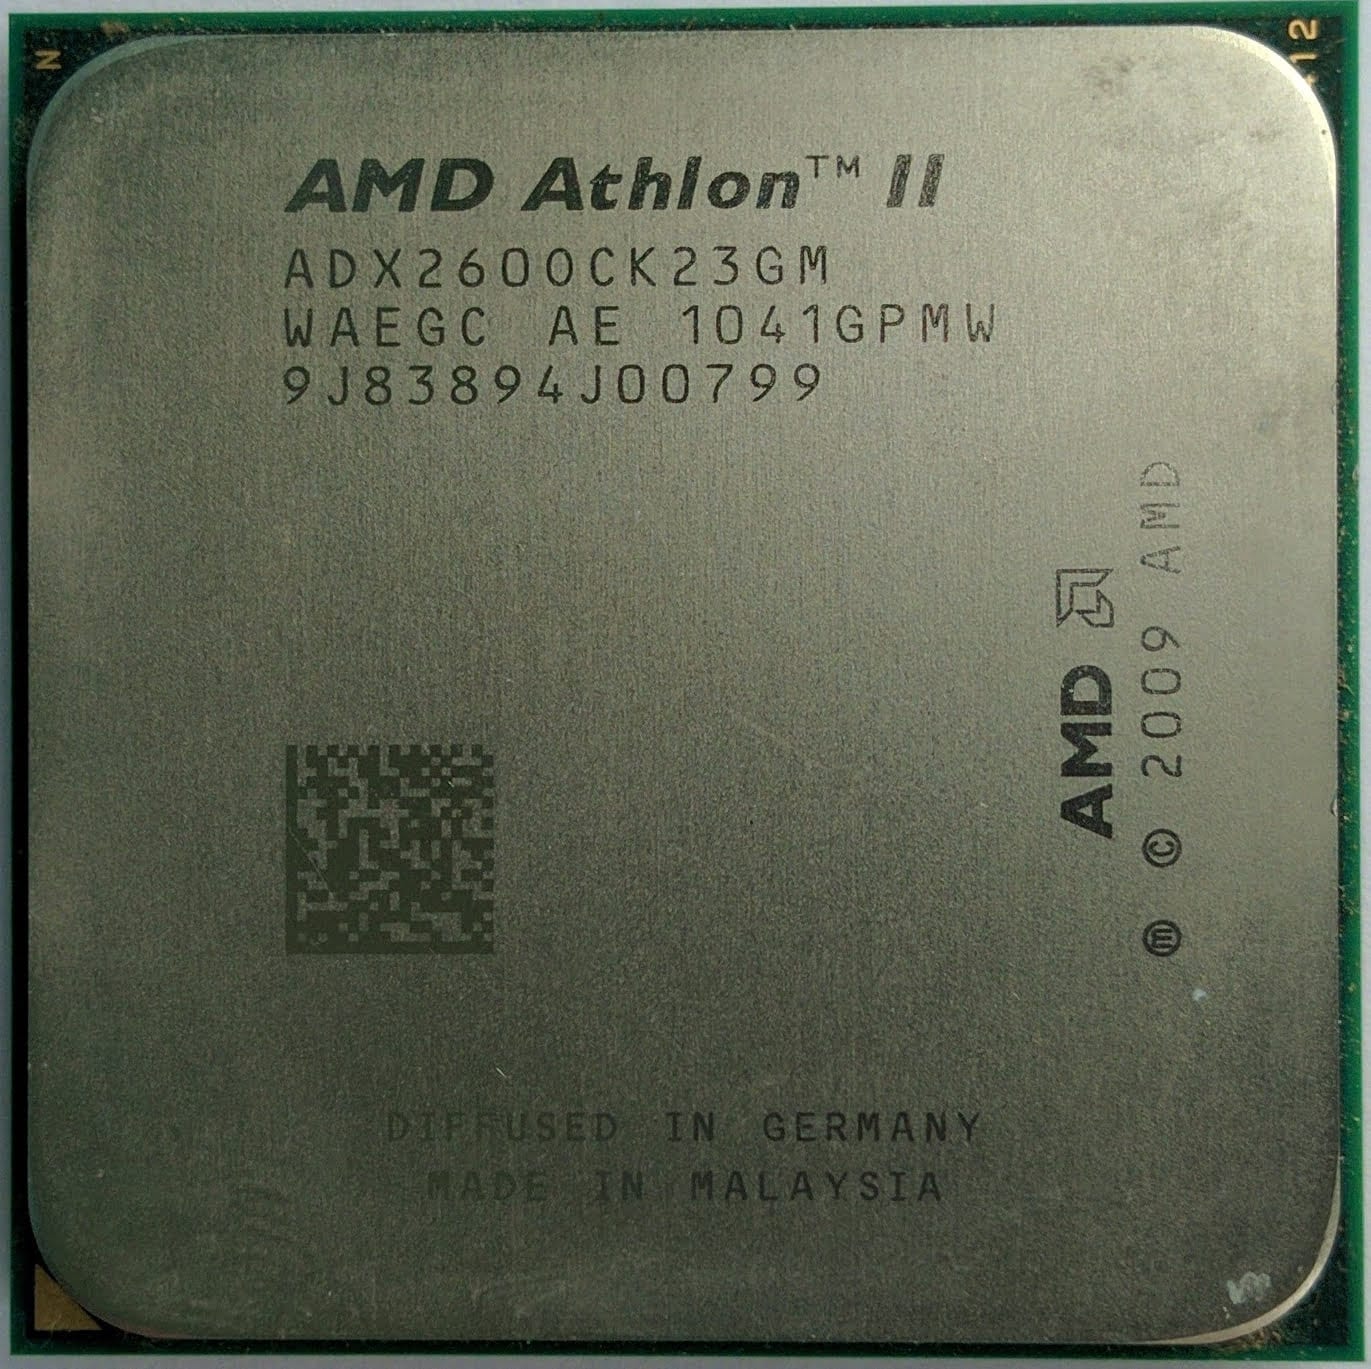 Amd athlon 64 4400. AMD Phenom II x4 975 Black Edition. AMD Athlon 64 x2 Dual Core Processor 5000 сокет. AMD Phenom 975 am2. AMD Athlon adx2600.